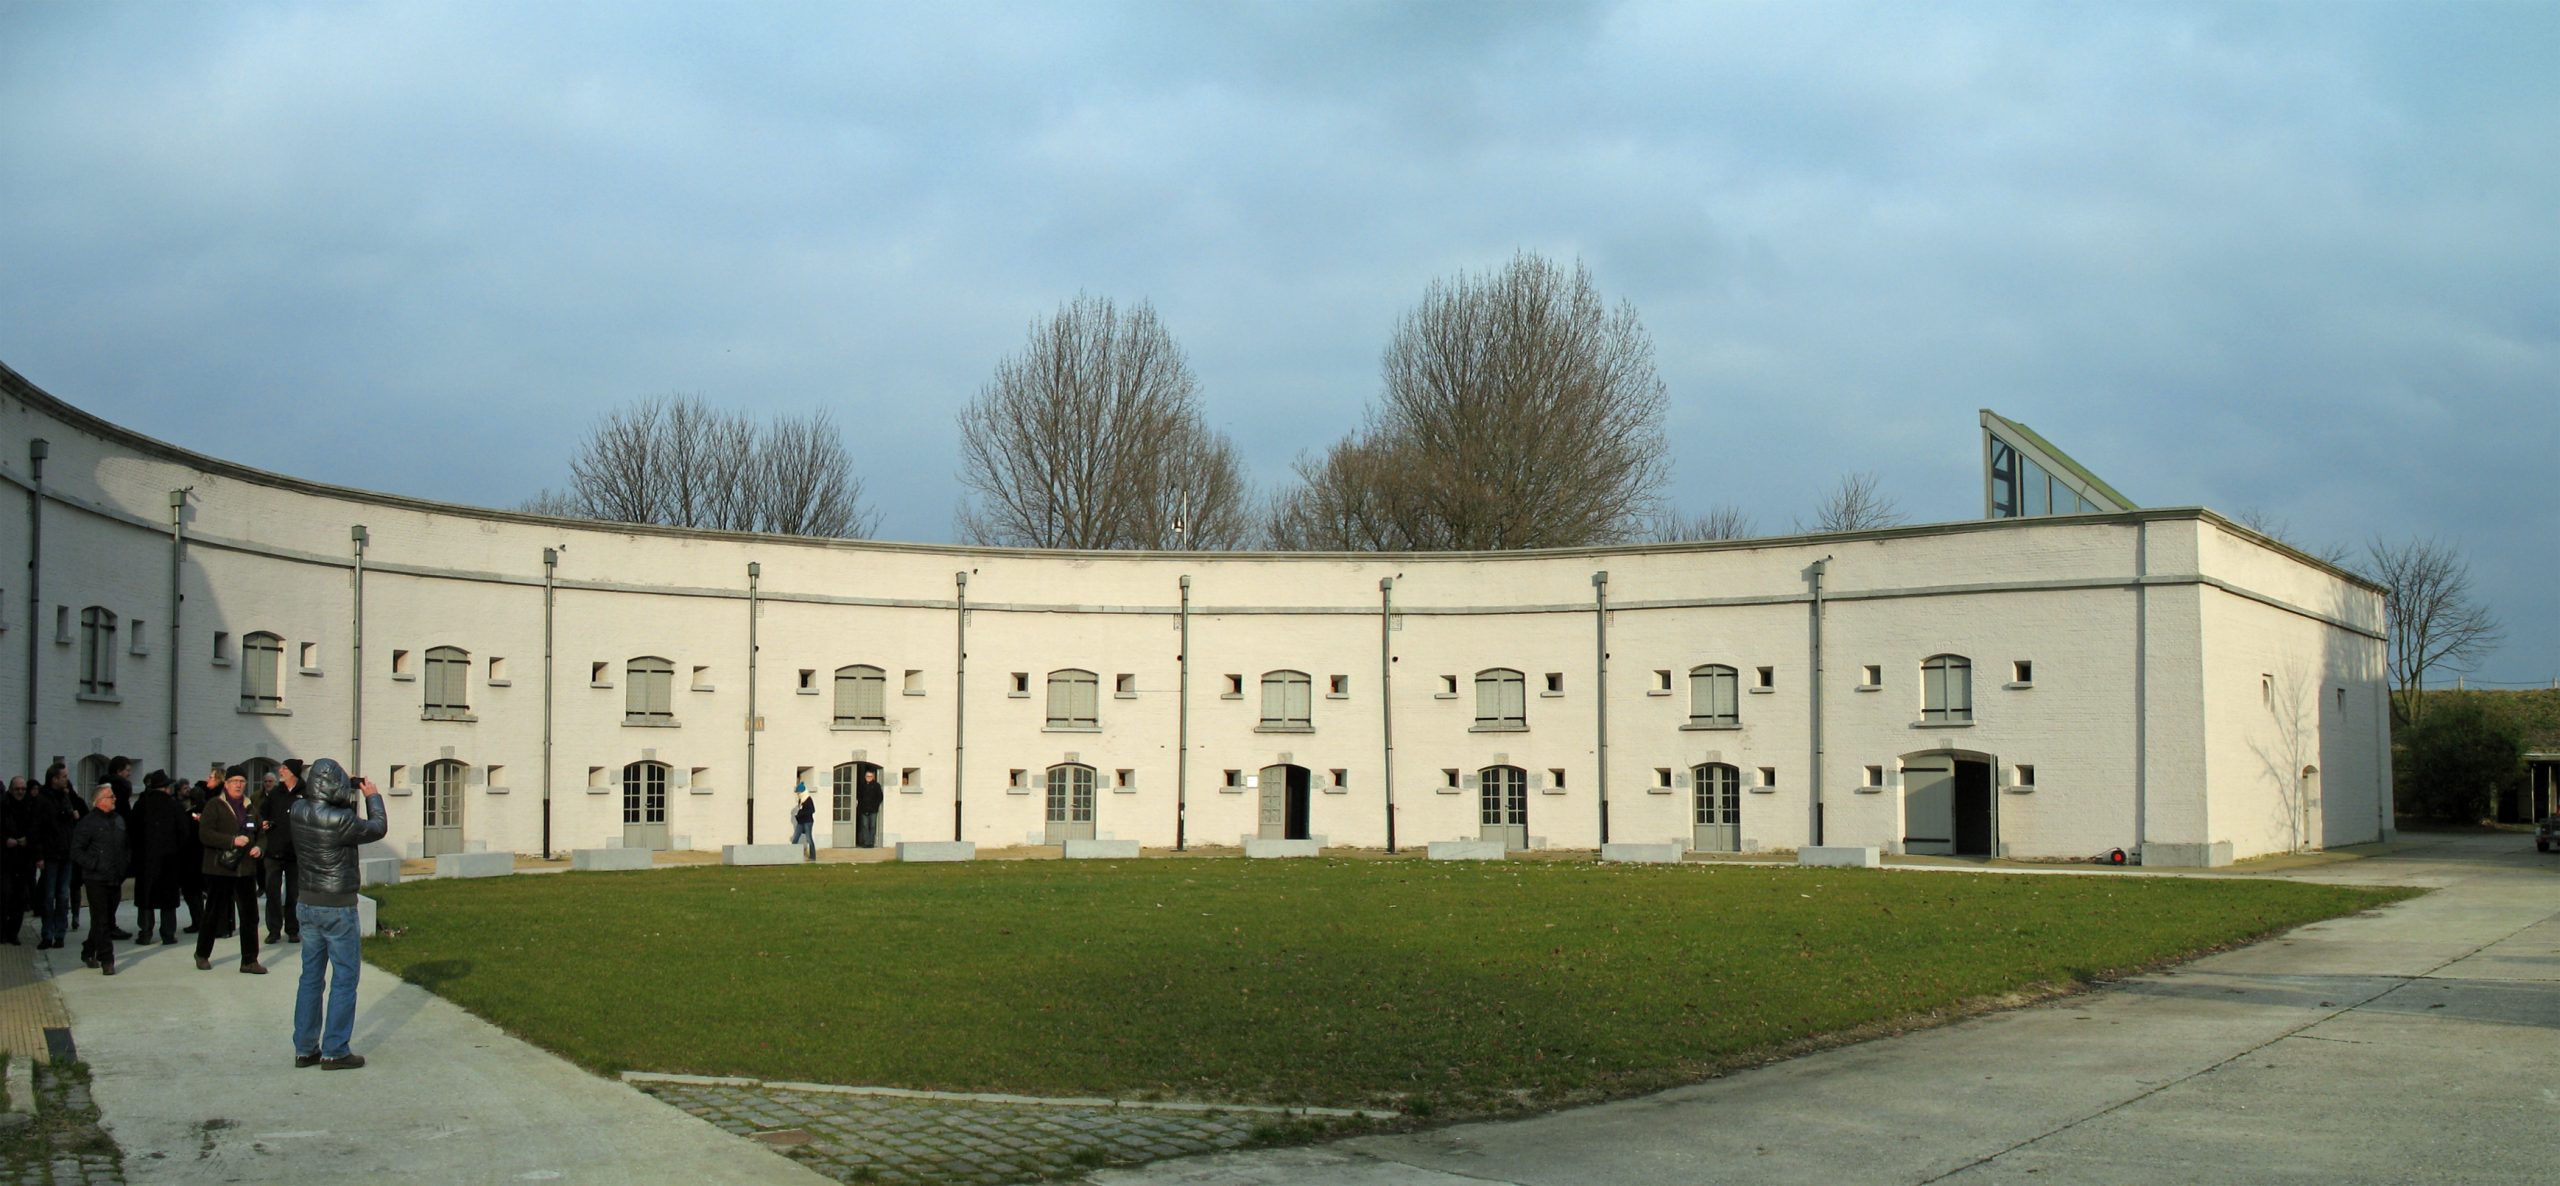 Fort Liefkenshoek - Endroit insolite à Kallo, en Belgique